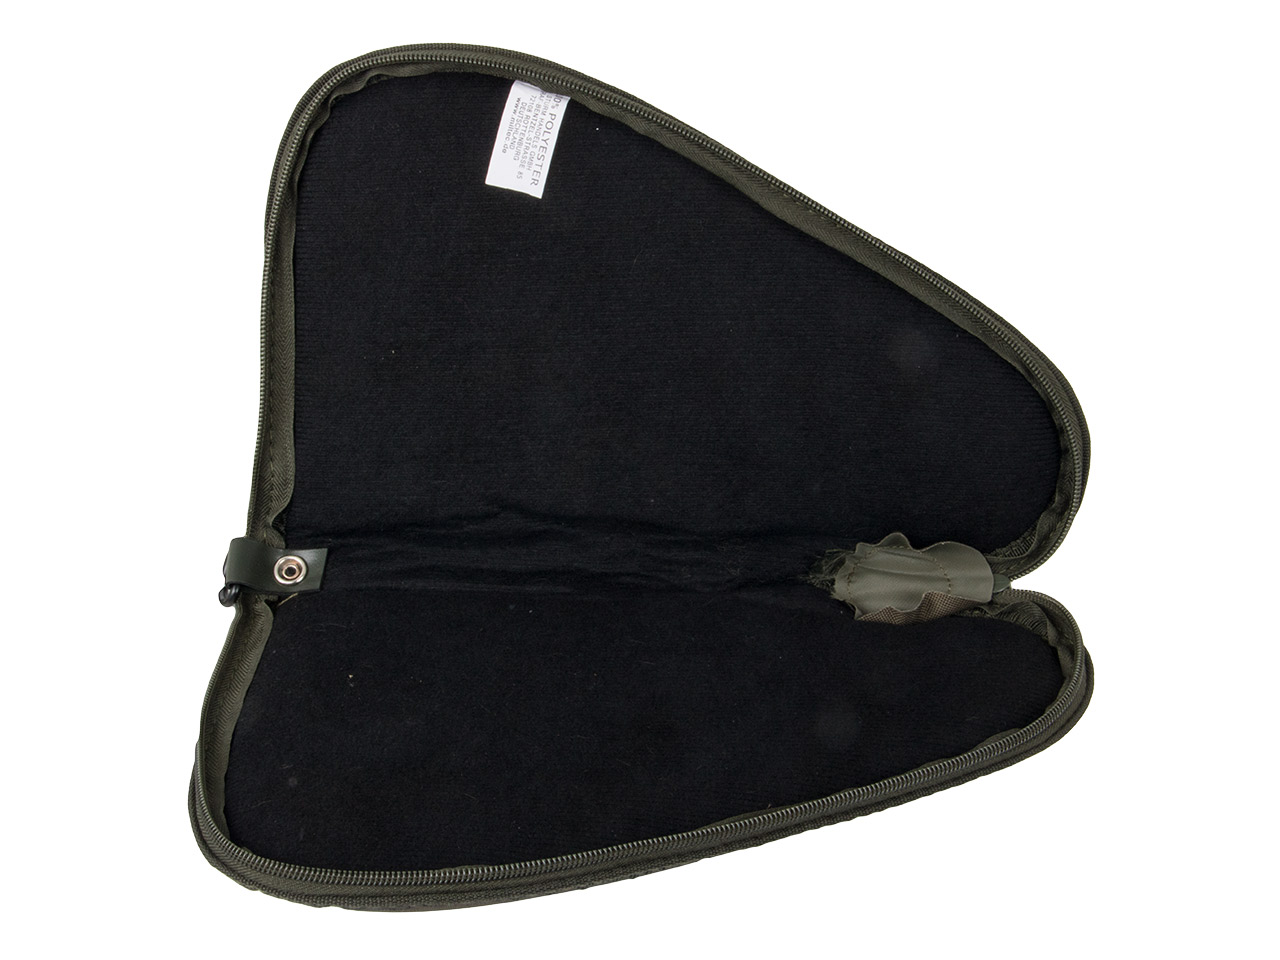 Pistolenfutteral Pistolentasche Transporttasche Mil-Tec abschließbar 26 x 15 cm für kleine Pistolen und Revolver oliv